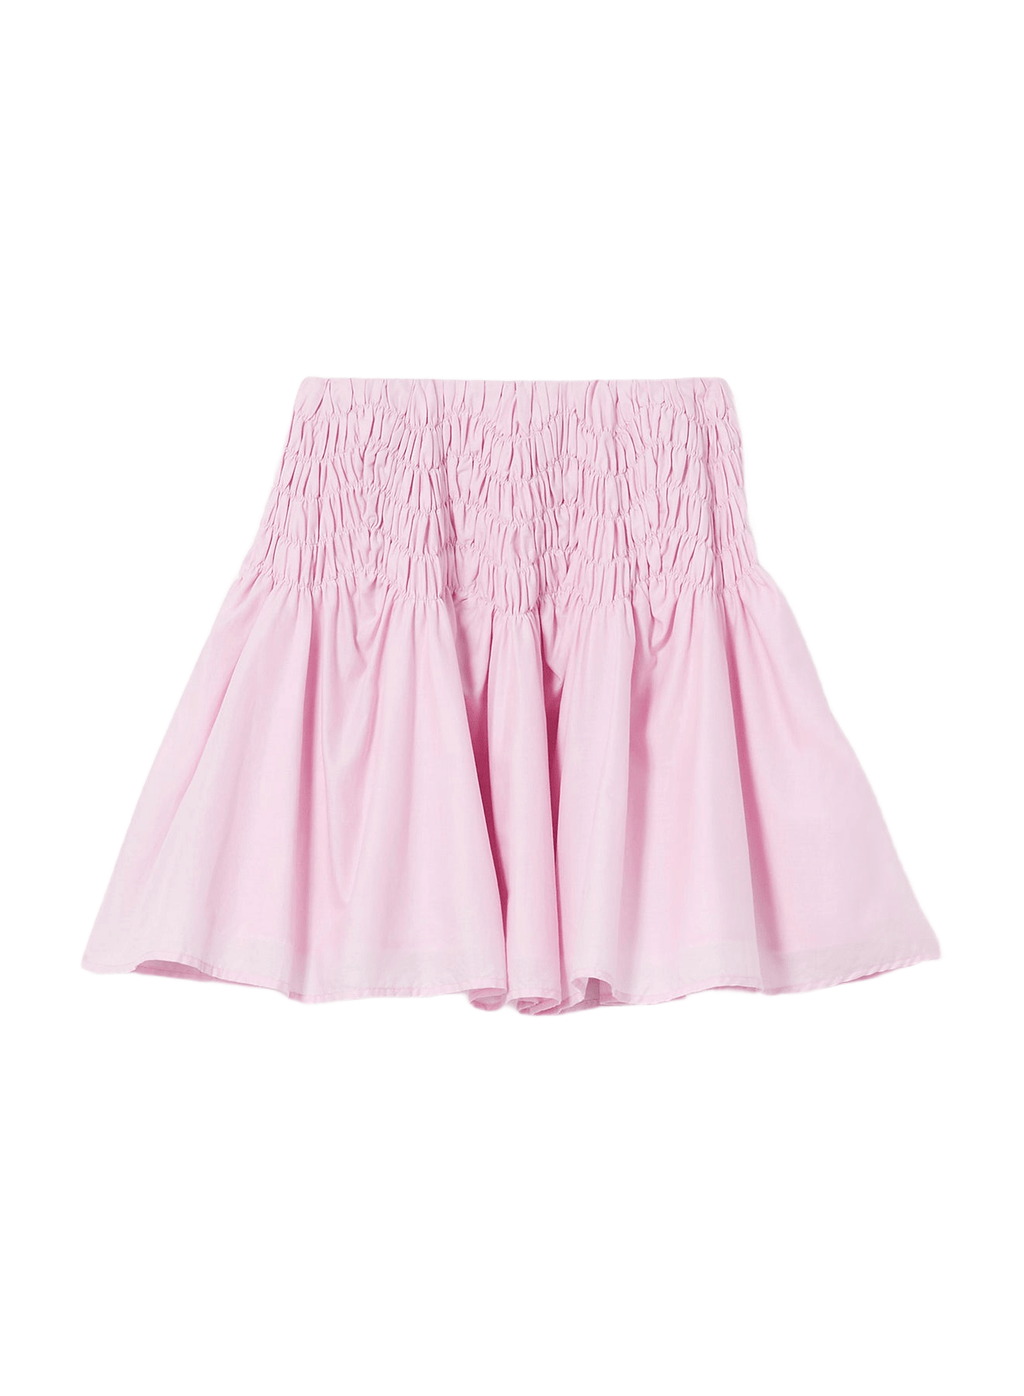 Merlette Elysian Skirt in Peony – Dora Maar